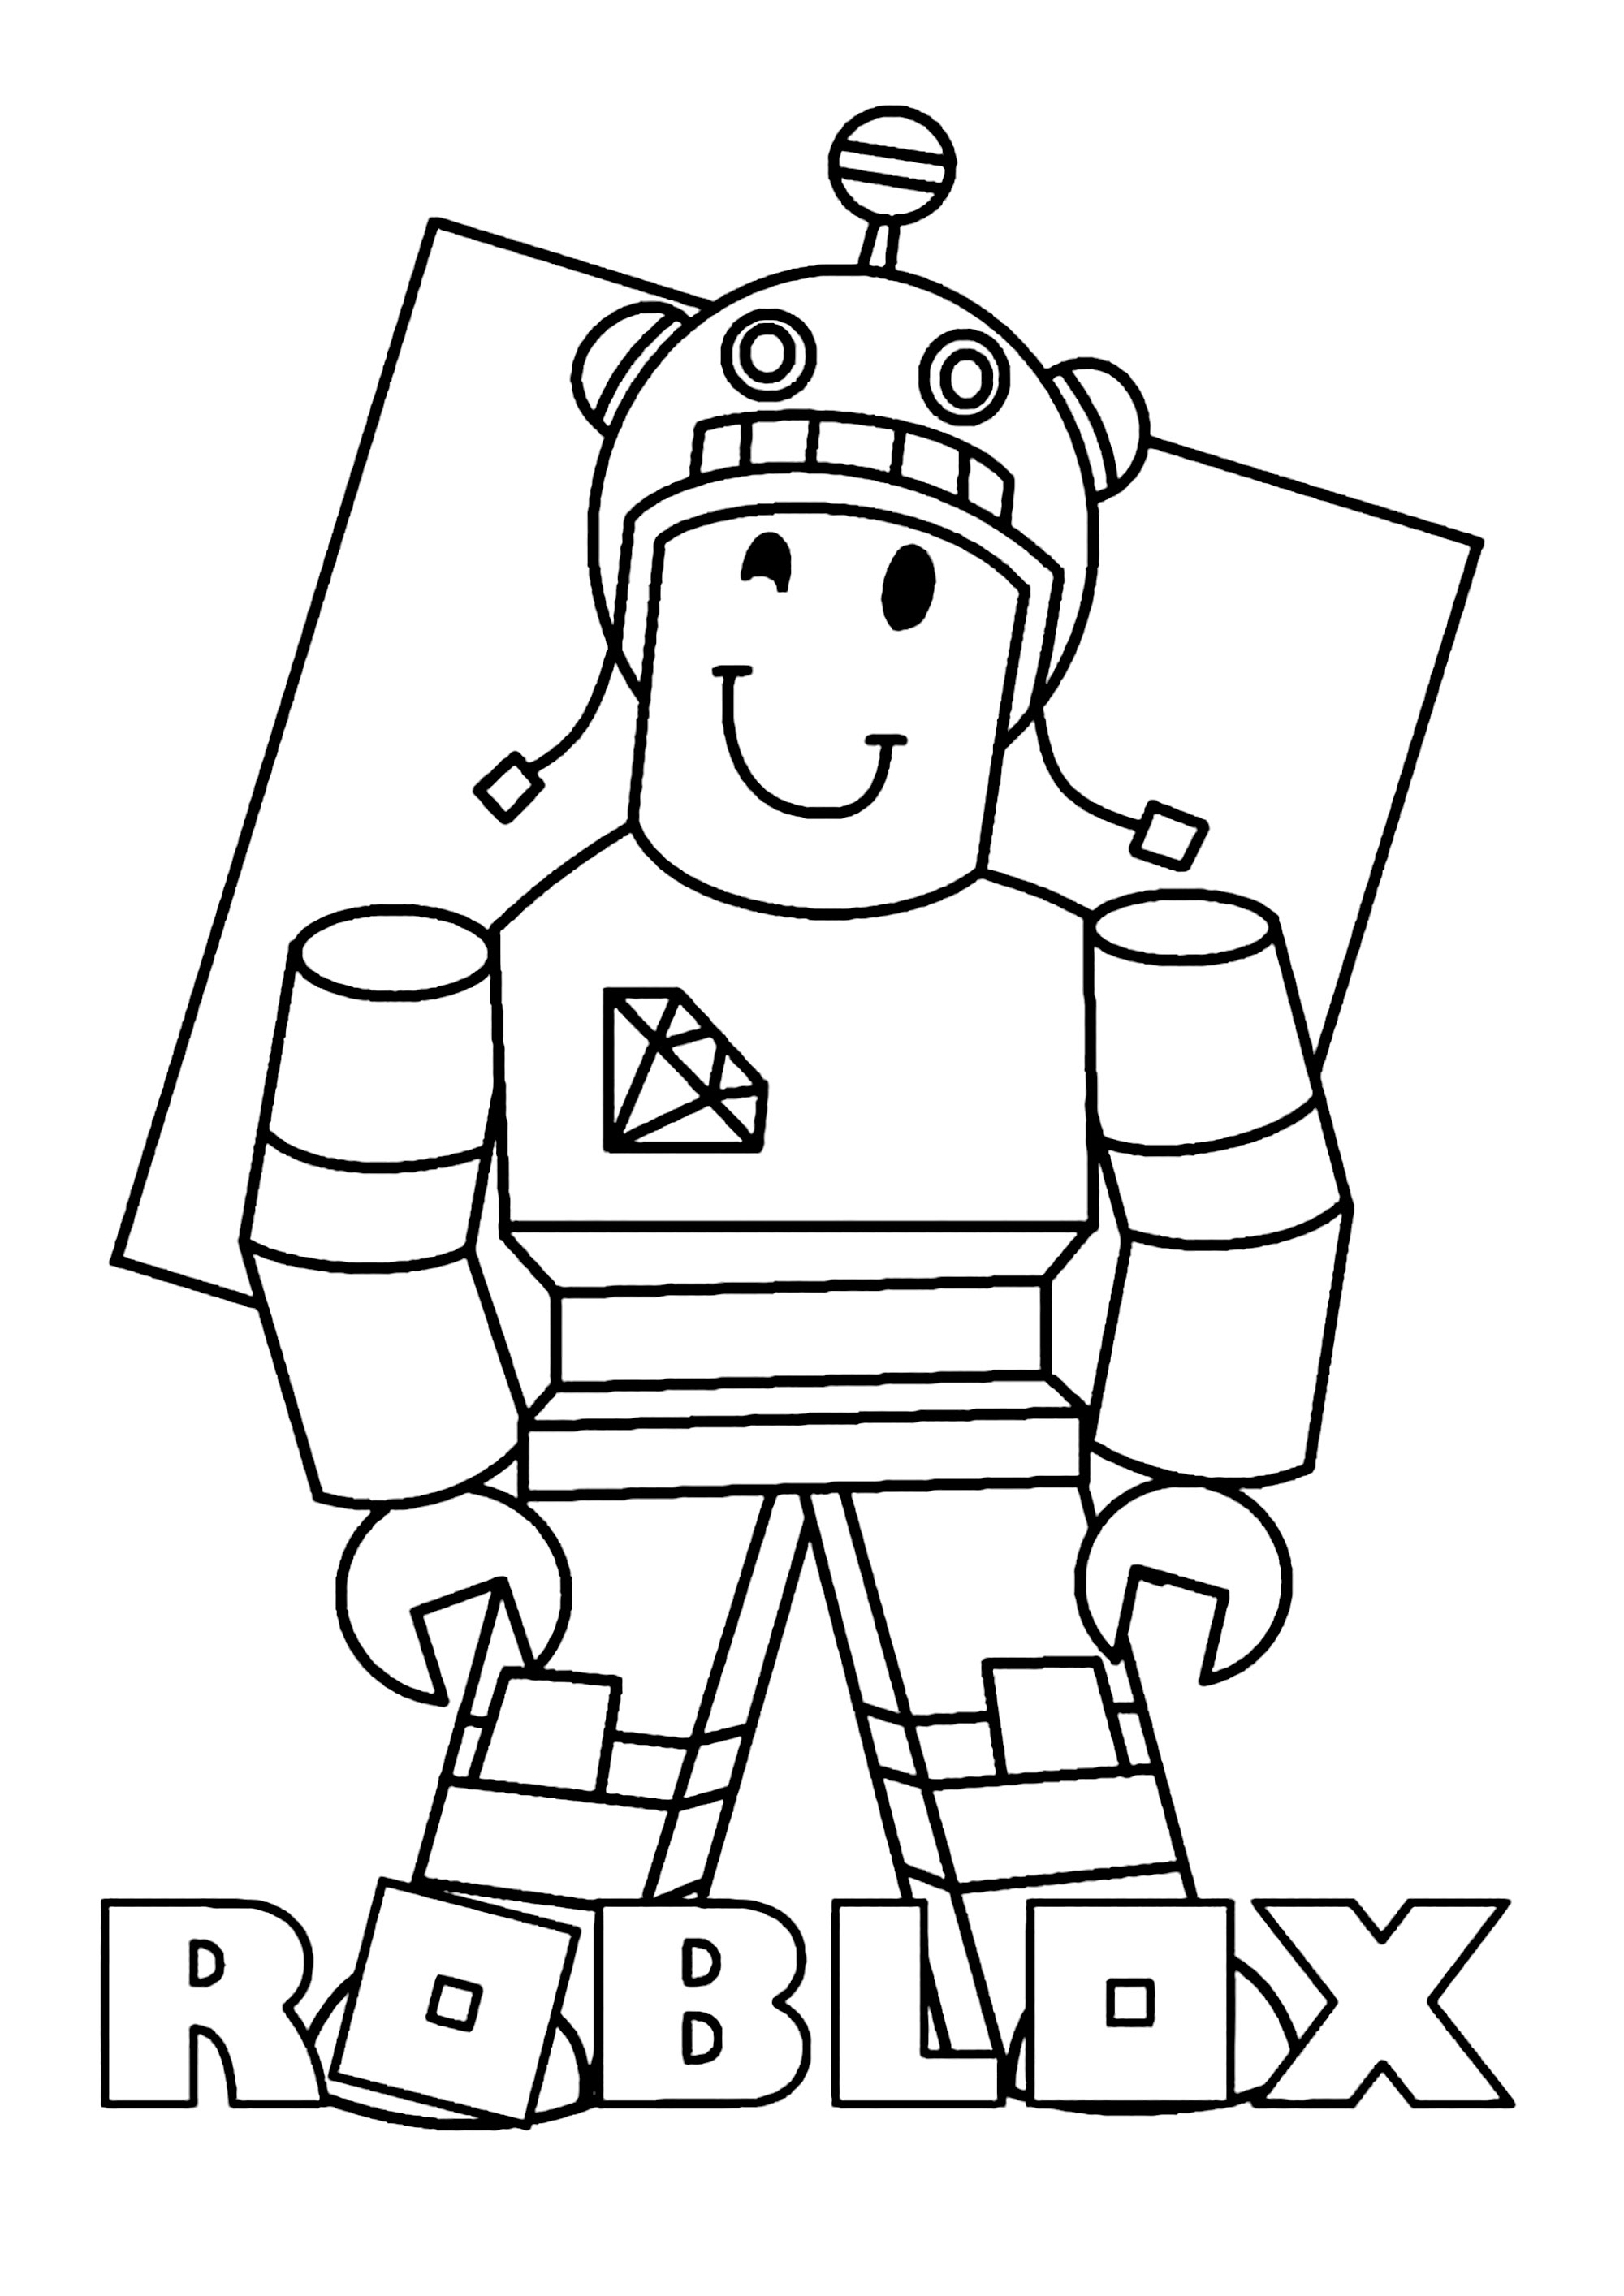 Roblox: personagem com um tapa-olho de pirata - Roblox - Just Color  Crianças : Páginas para colorir para crianças